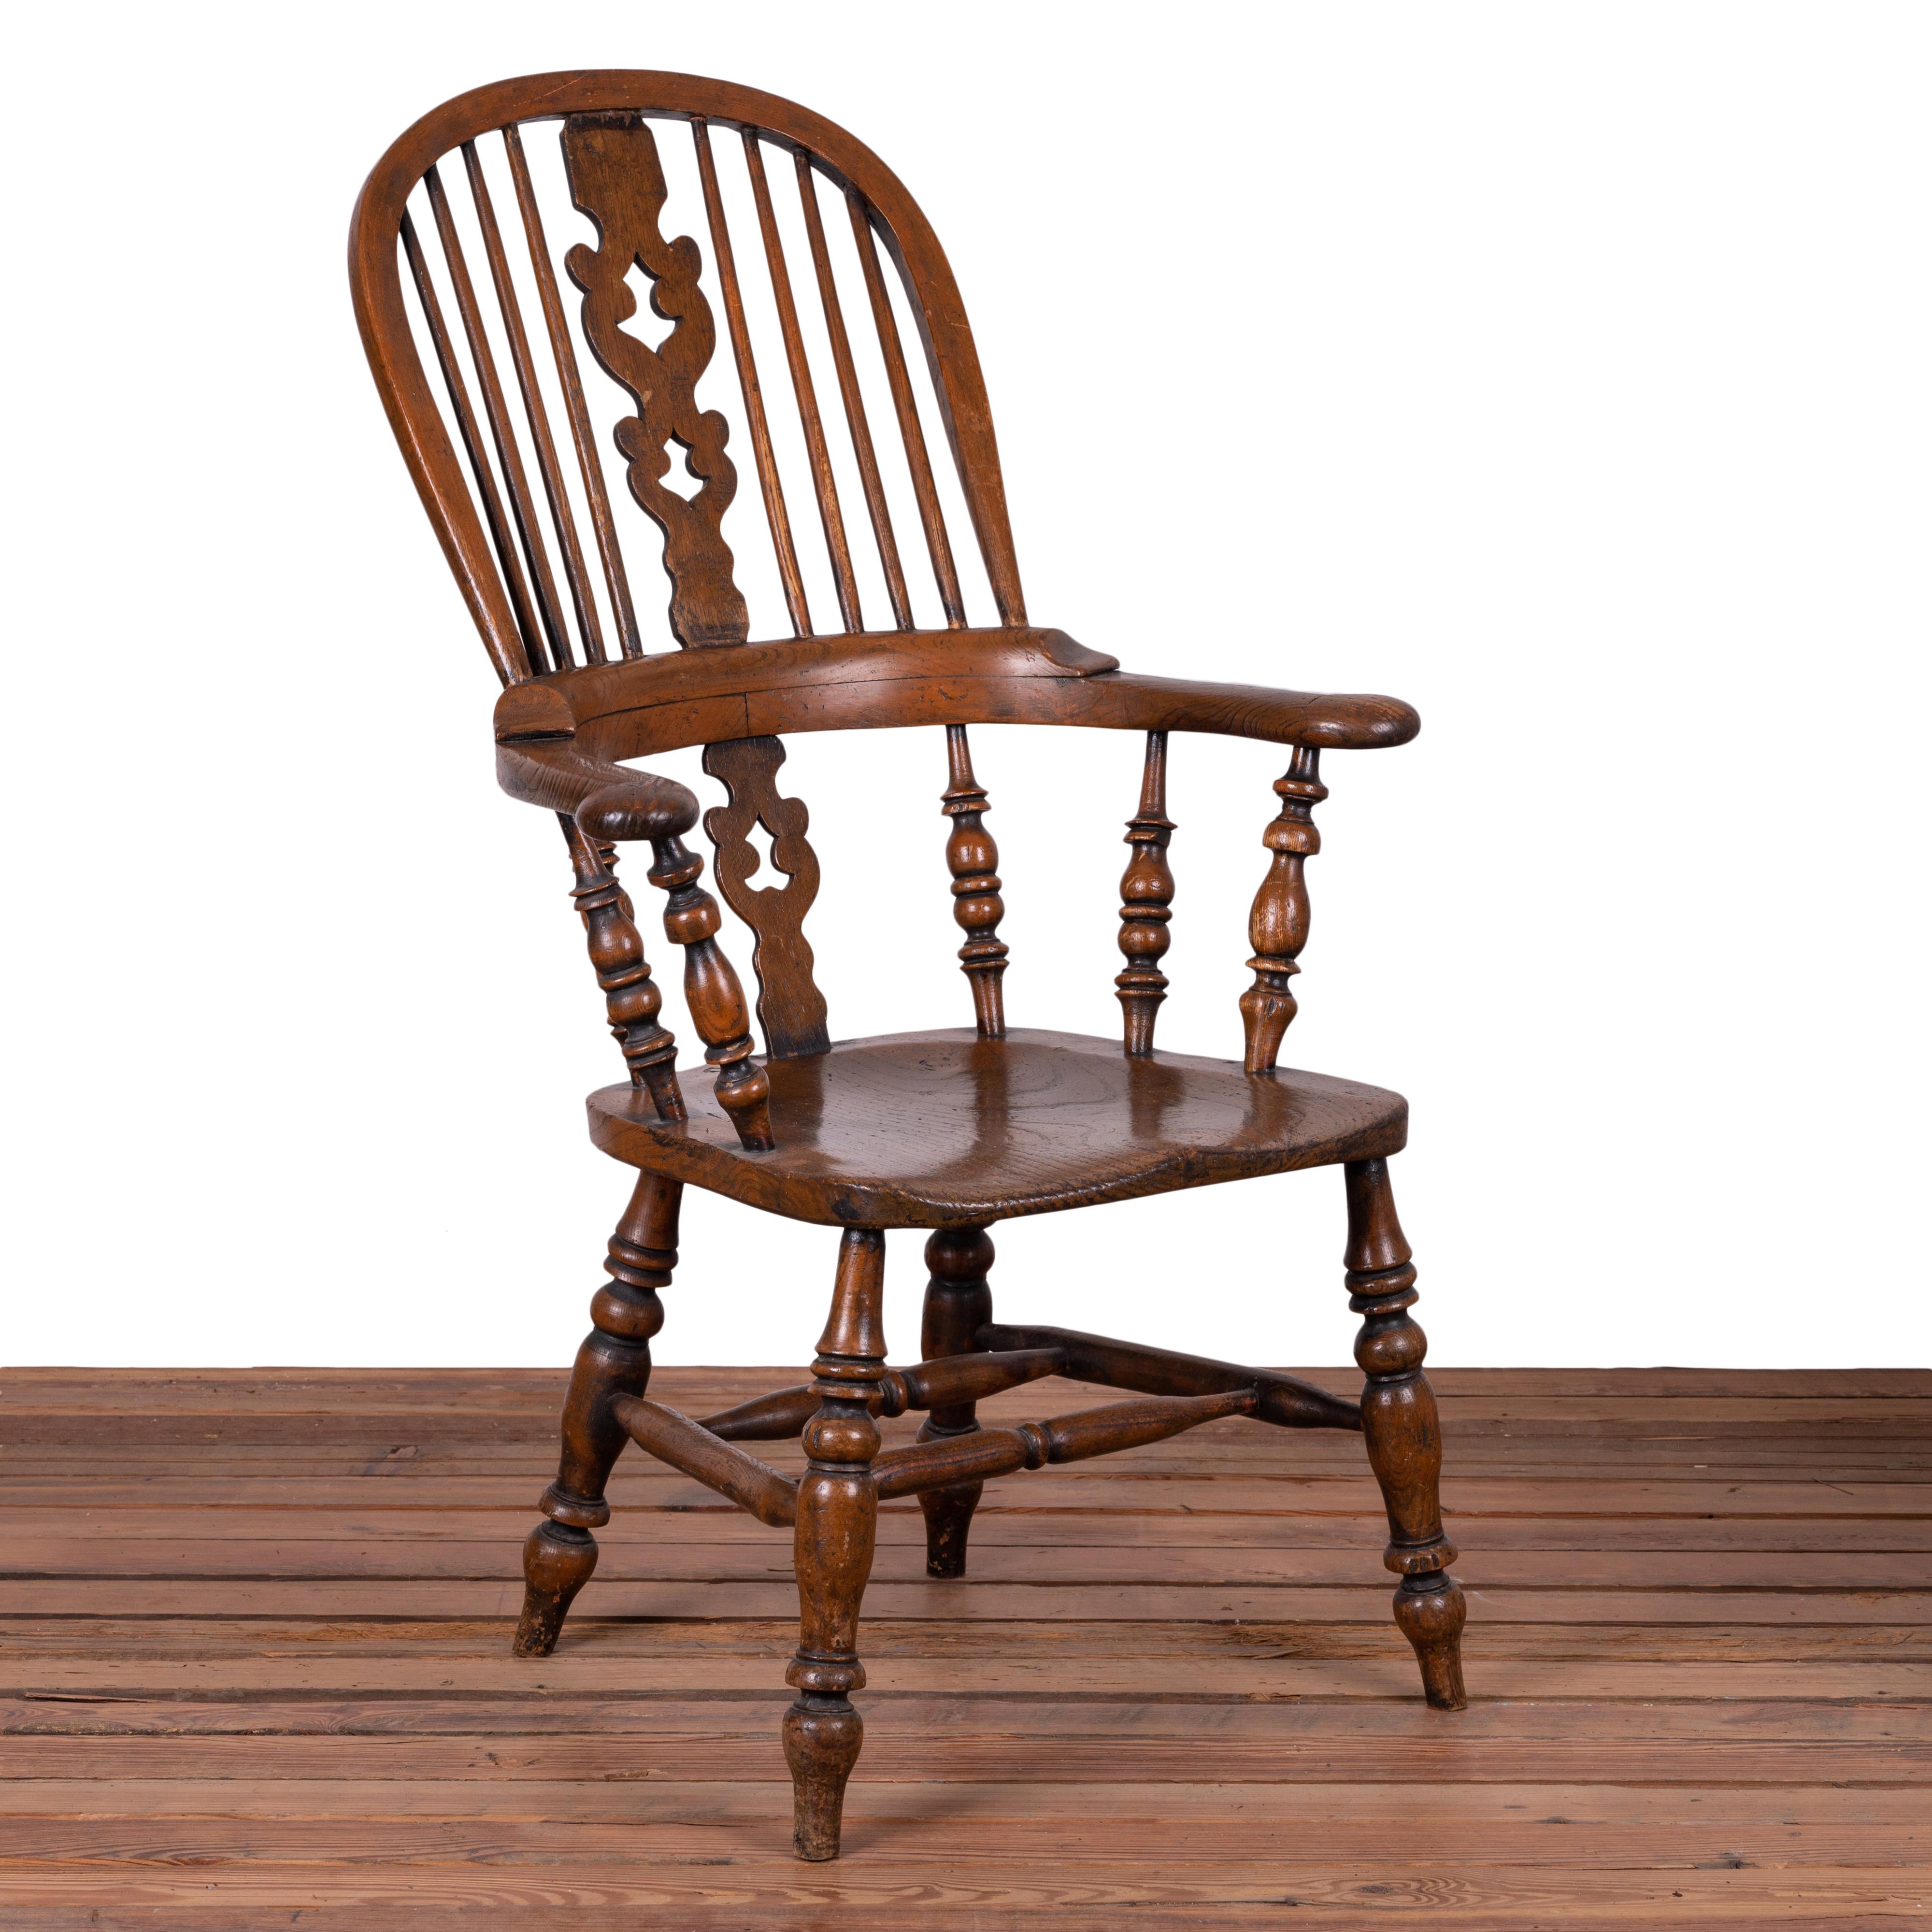 Ein Satz von 4 englischen Ulmen-Windsor-Sesseln mit breiter Armlehne, 19. Jahrhundert.

26 Zoll breit, 26 ½ Zoll tief und 45 Zoll hoch

Armhöhe 28 Zoll; Sitzhöhe 18 Zoll 